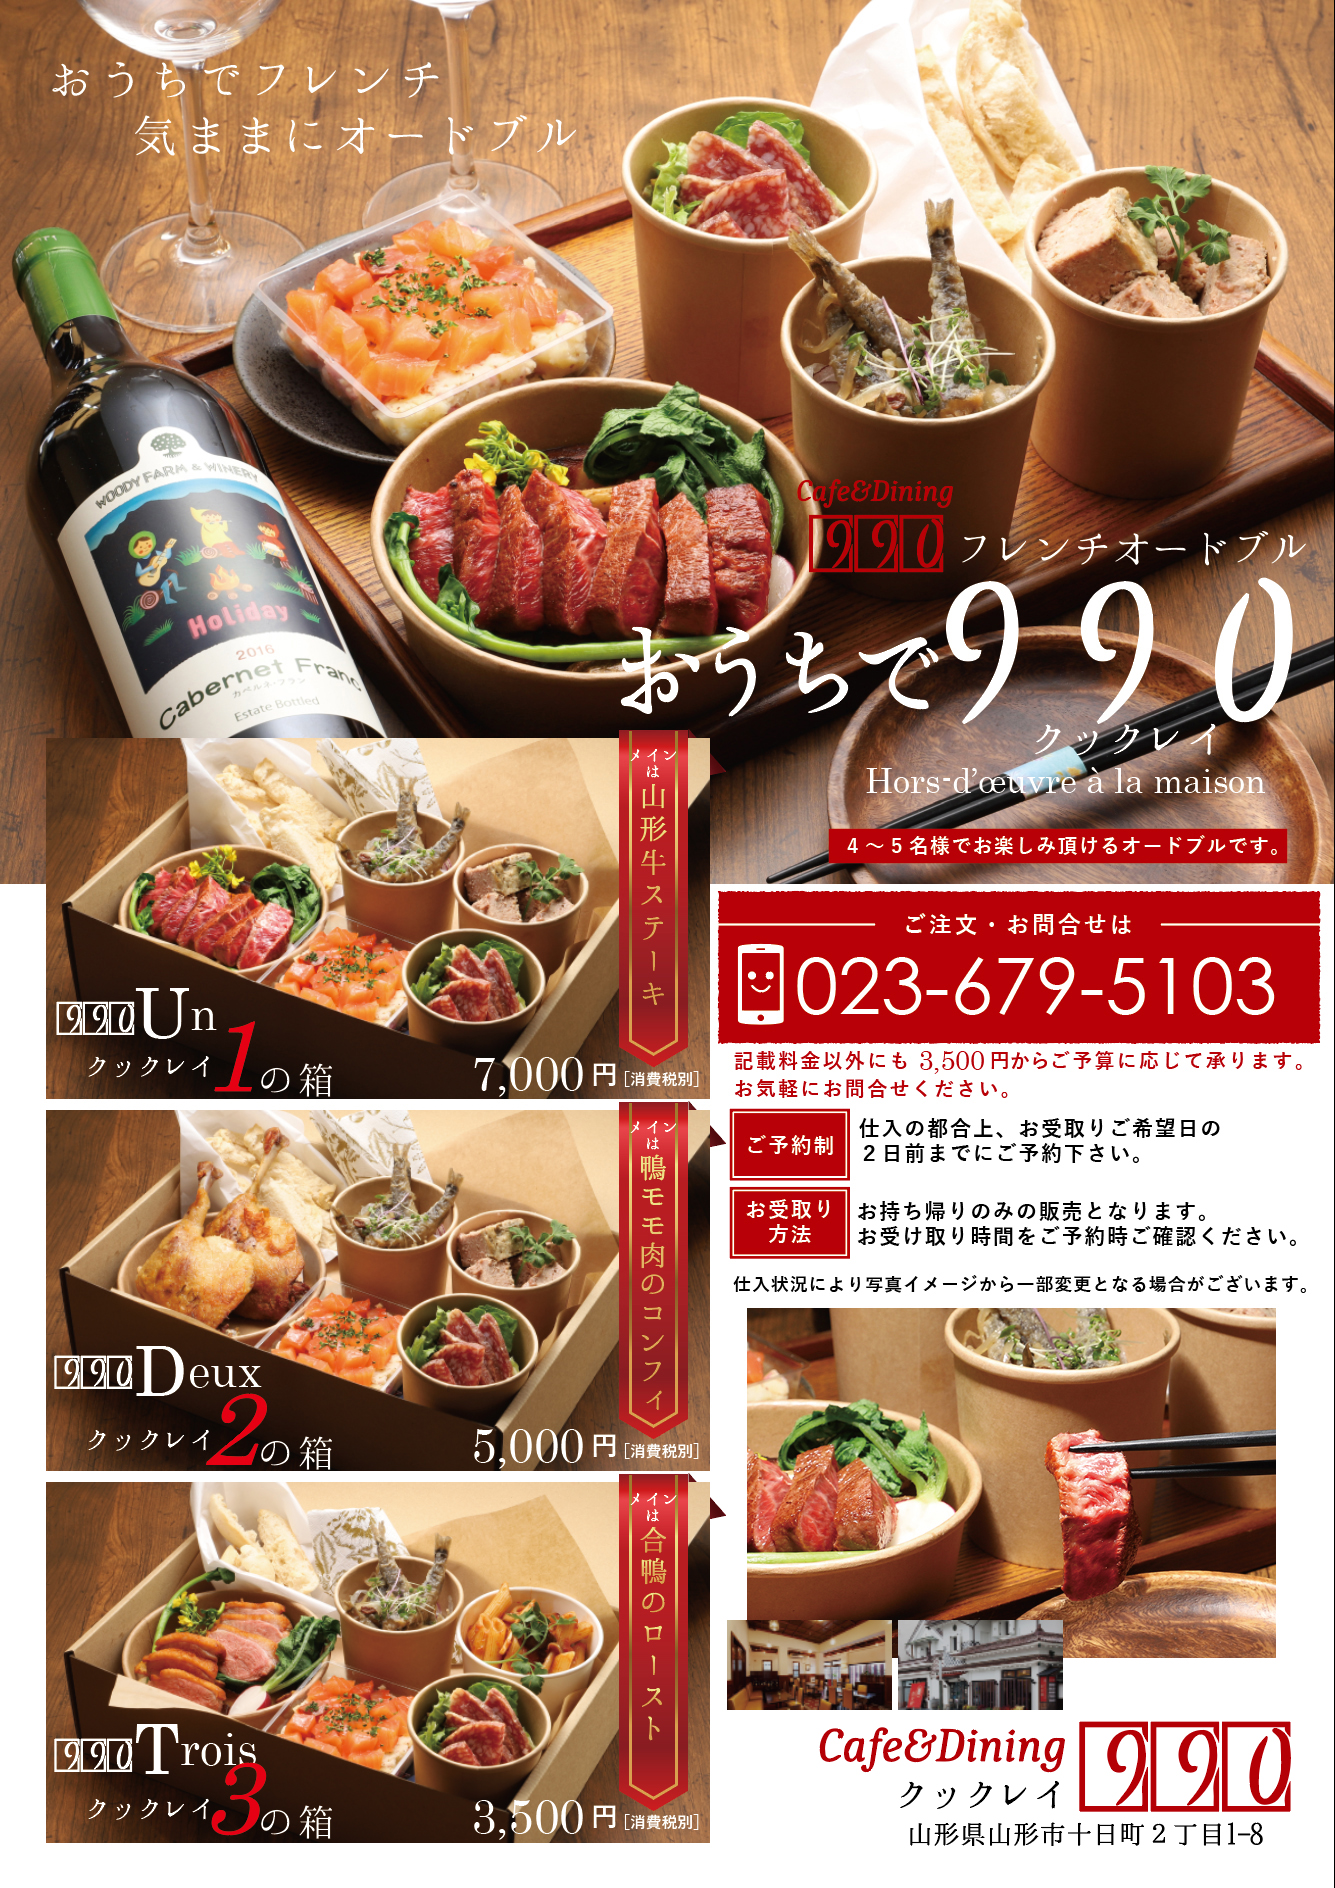 山形市テイクアウト特集 Cafe Dining 990 山形まるごと 紅の蔵 山形 まるごと観光情報サイト Visit Yamagata